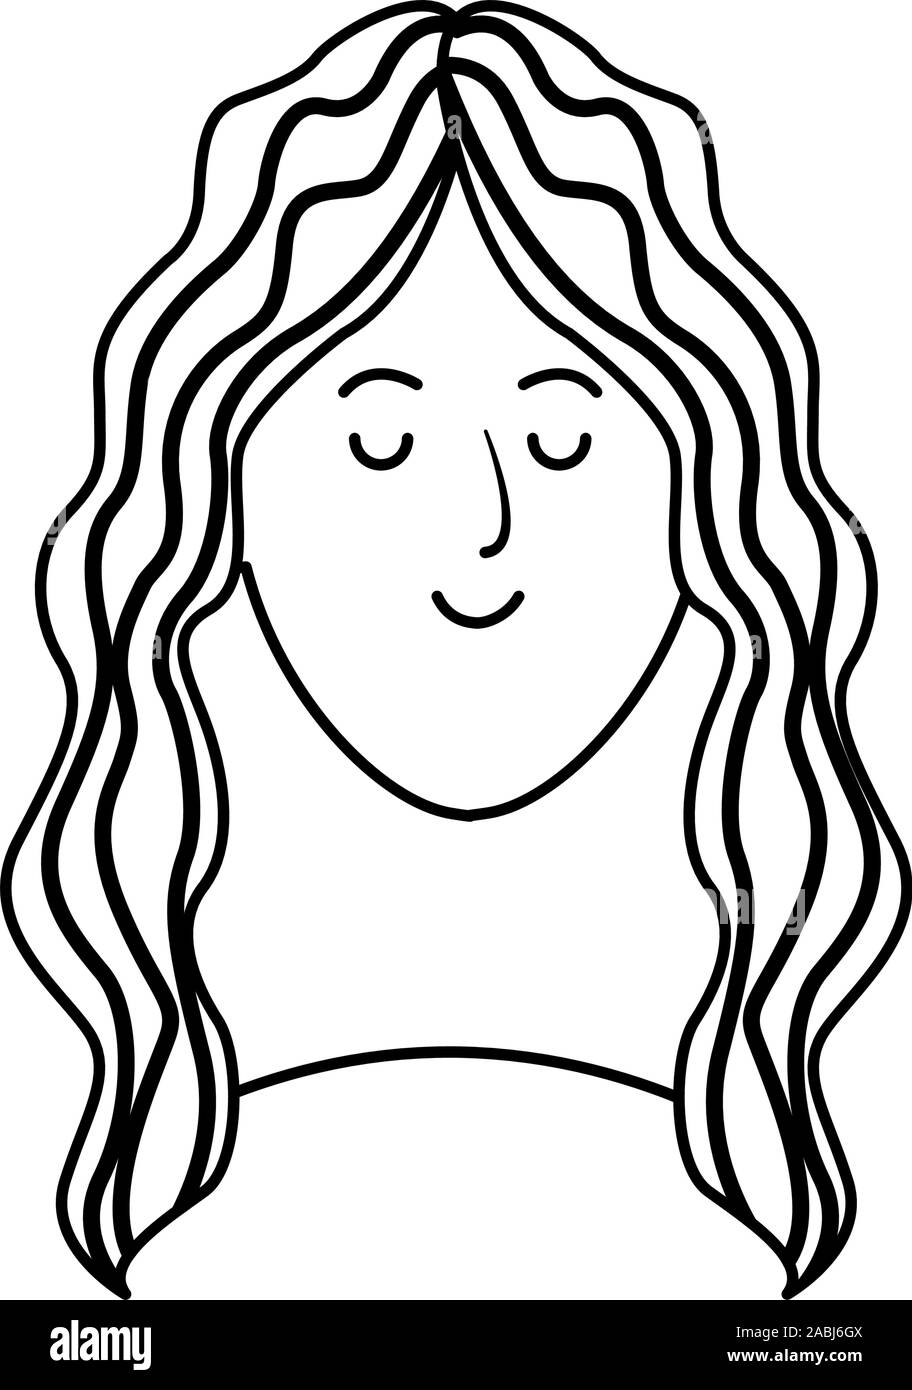 woman face icon, flat design Stock Vector